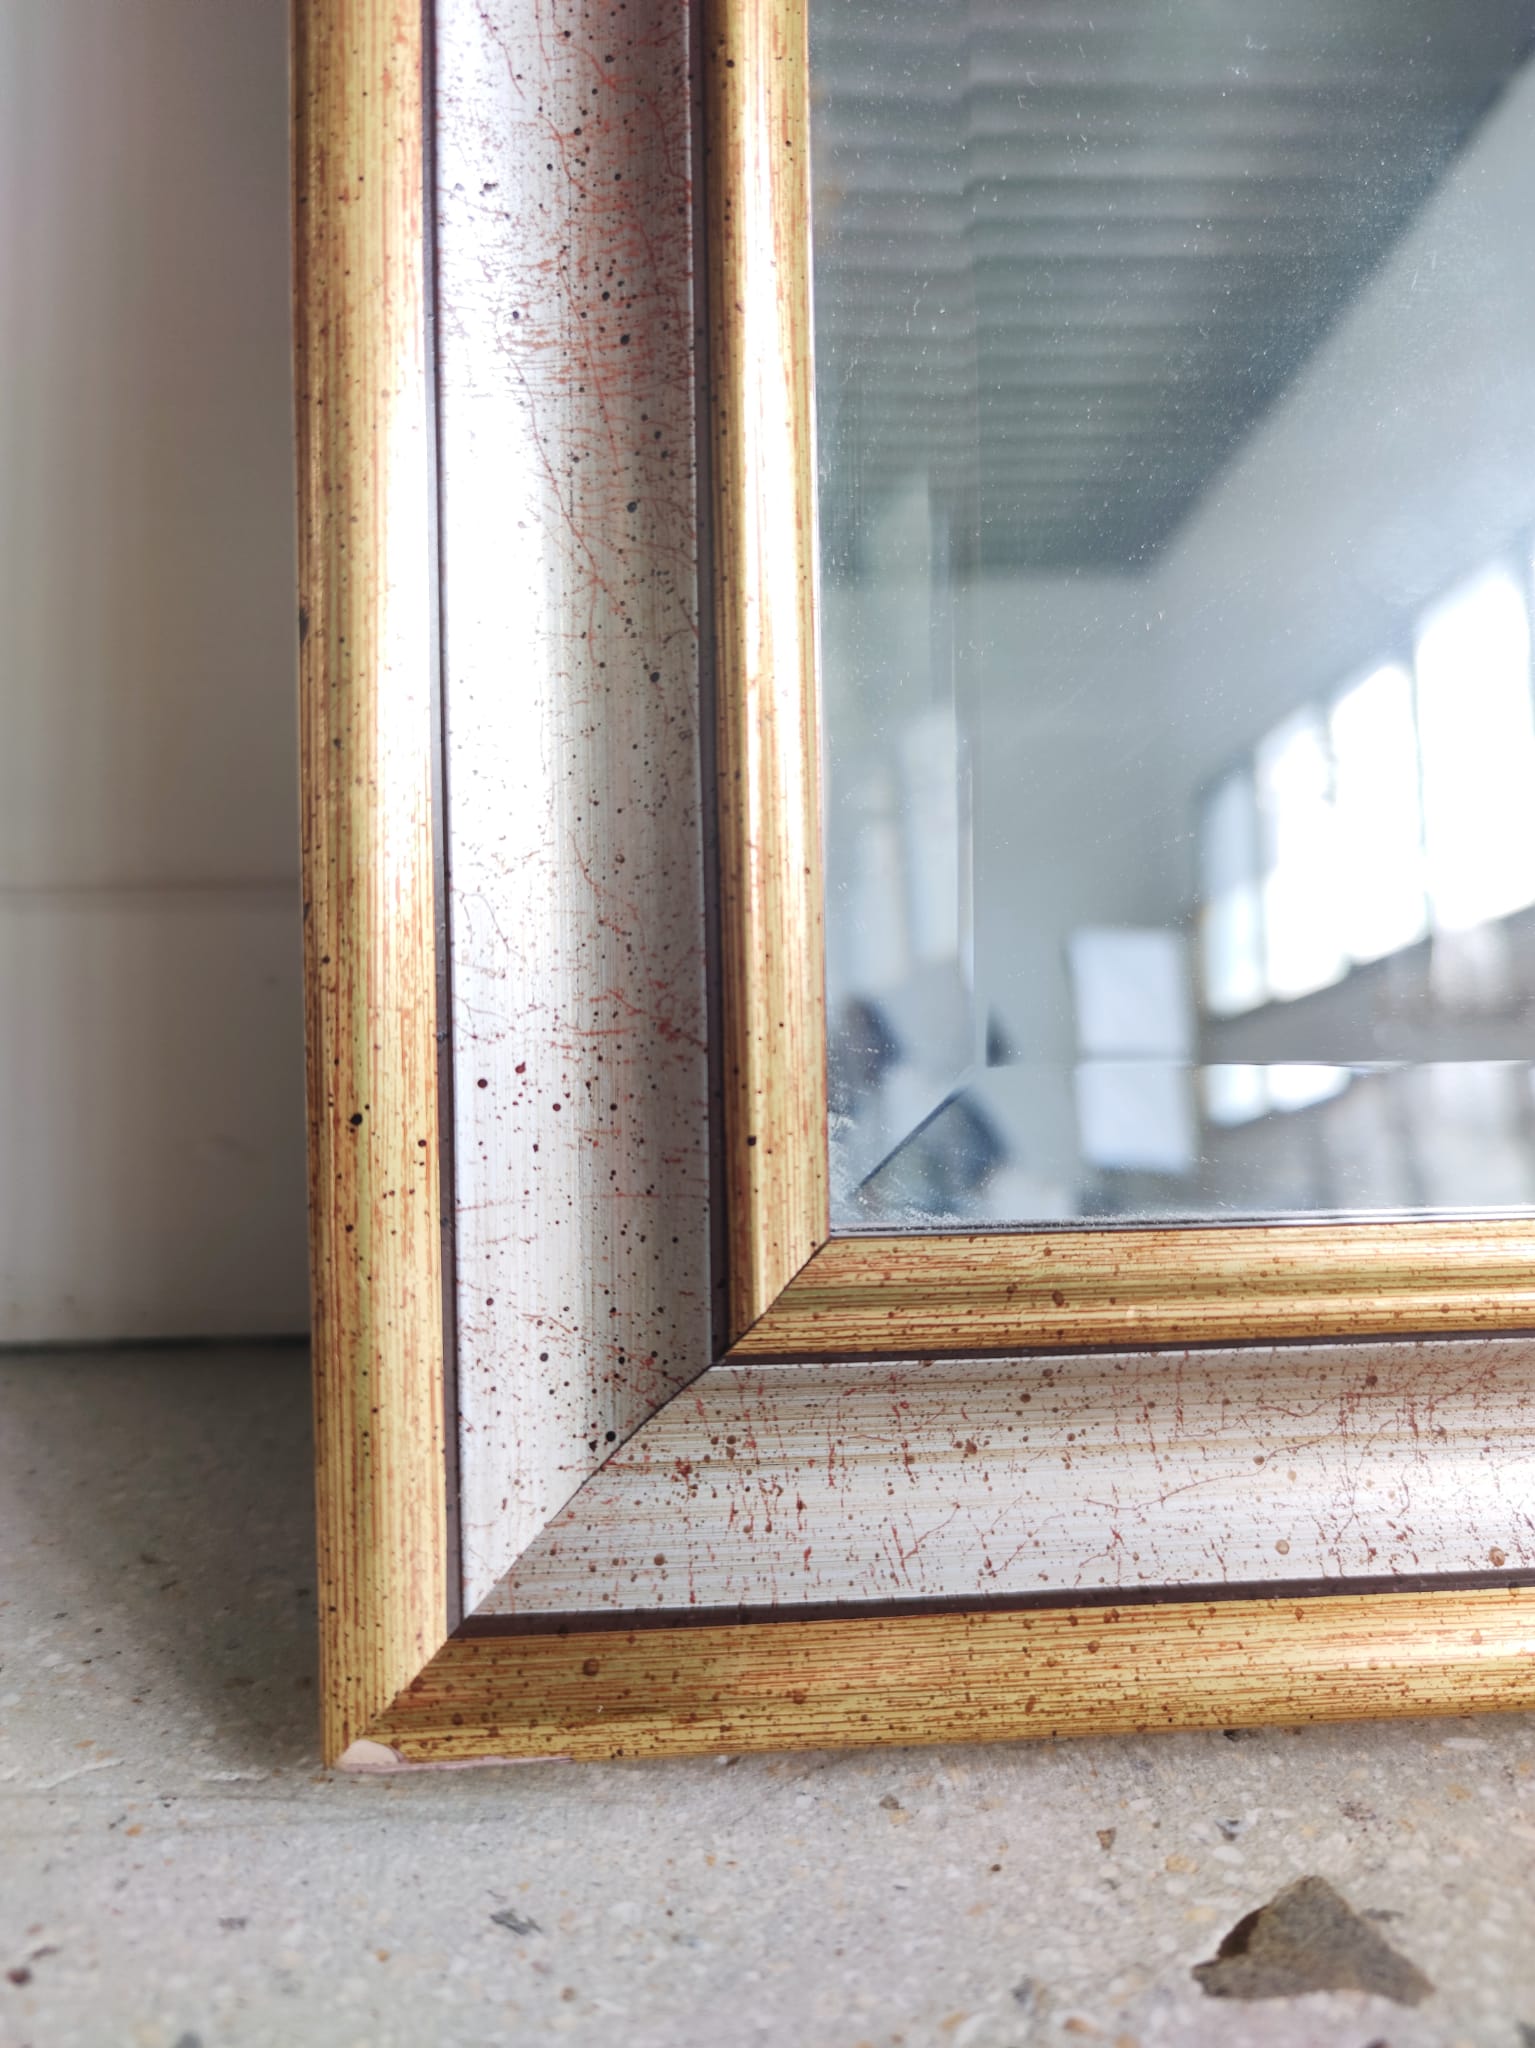 Miroir rectangulaire moderne doré et argenté H: 81cm